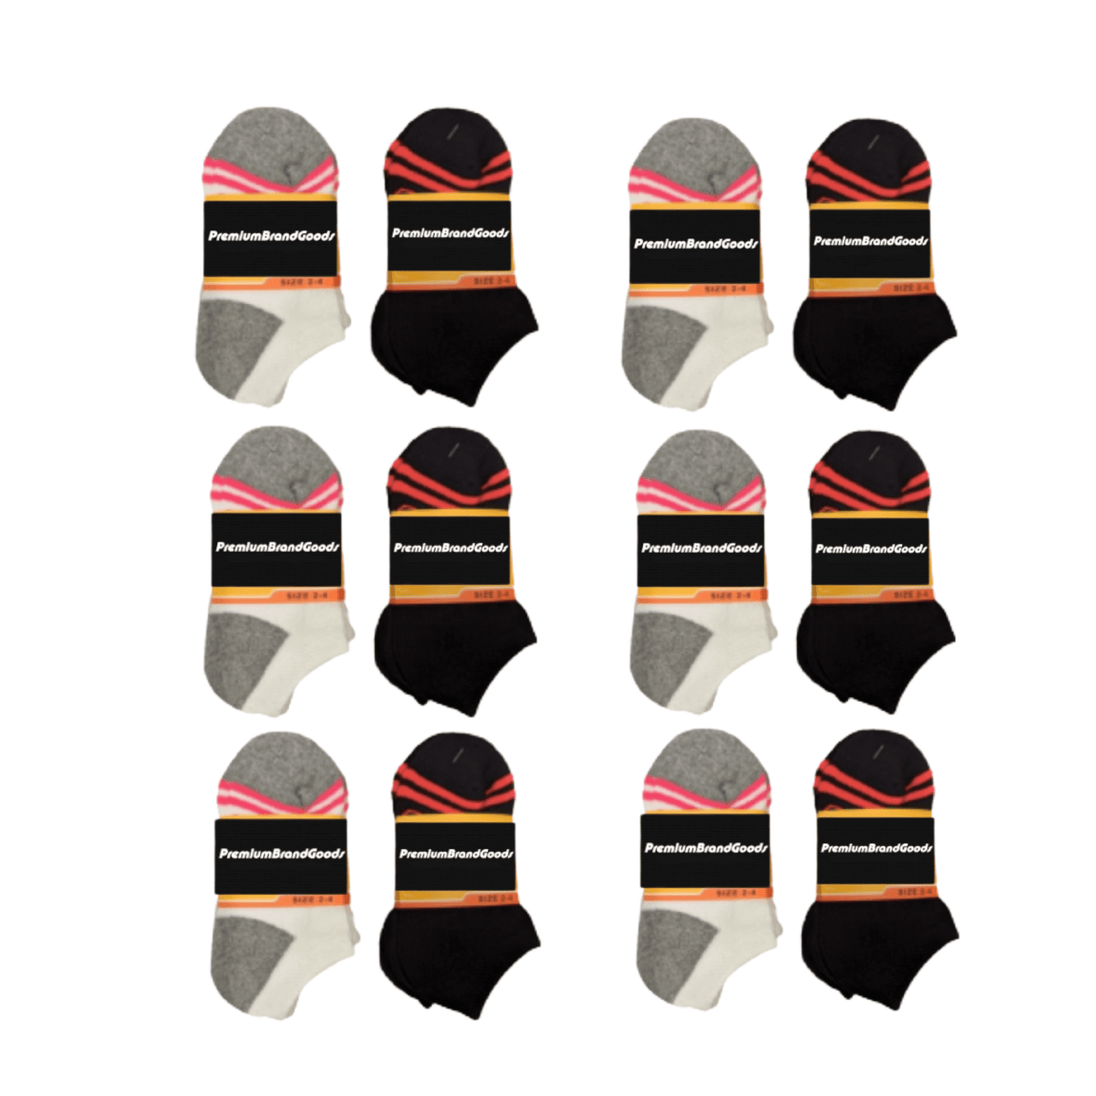  Premiumbrandgoods Low Cut Socks for kids